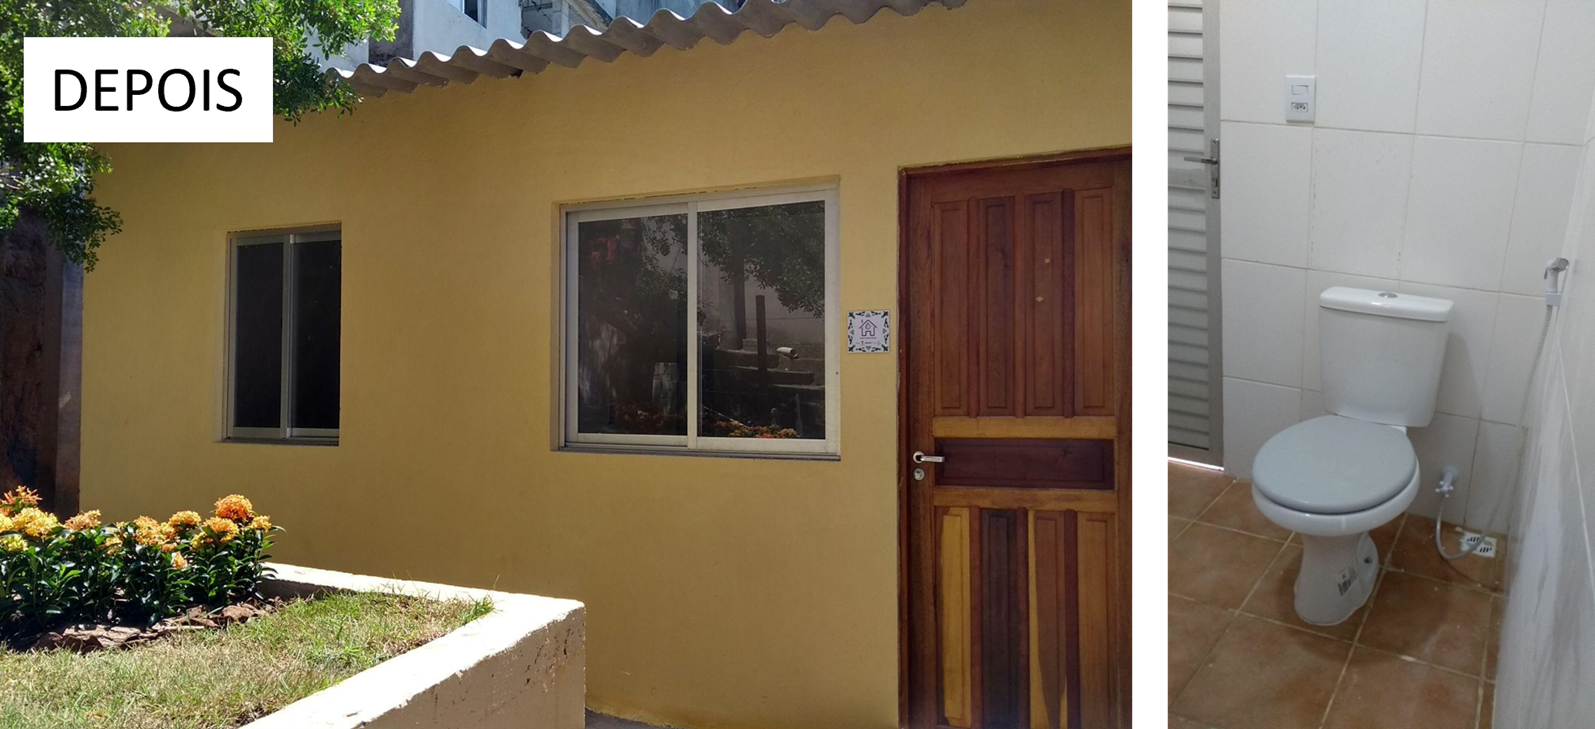 Antes e depois da reforma de residência em São Benedito, construída com recursos do Projeto Saúde Habitacional. O local possuía graves problemas estruturais, de saneamento, ventilação e acesso à água.